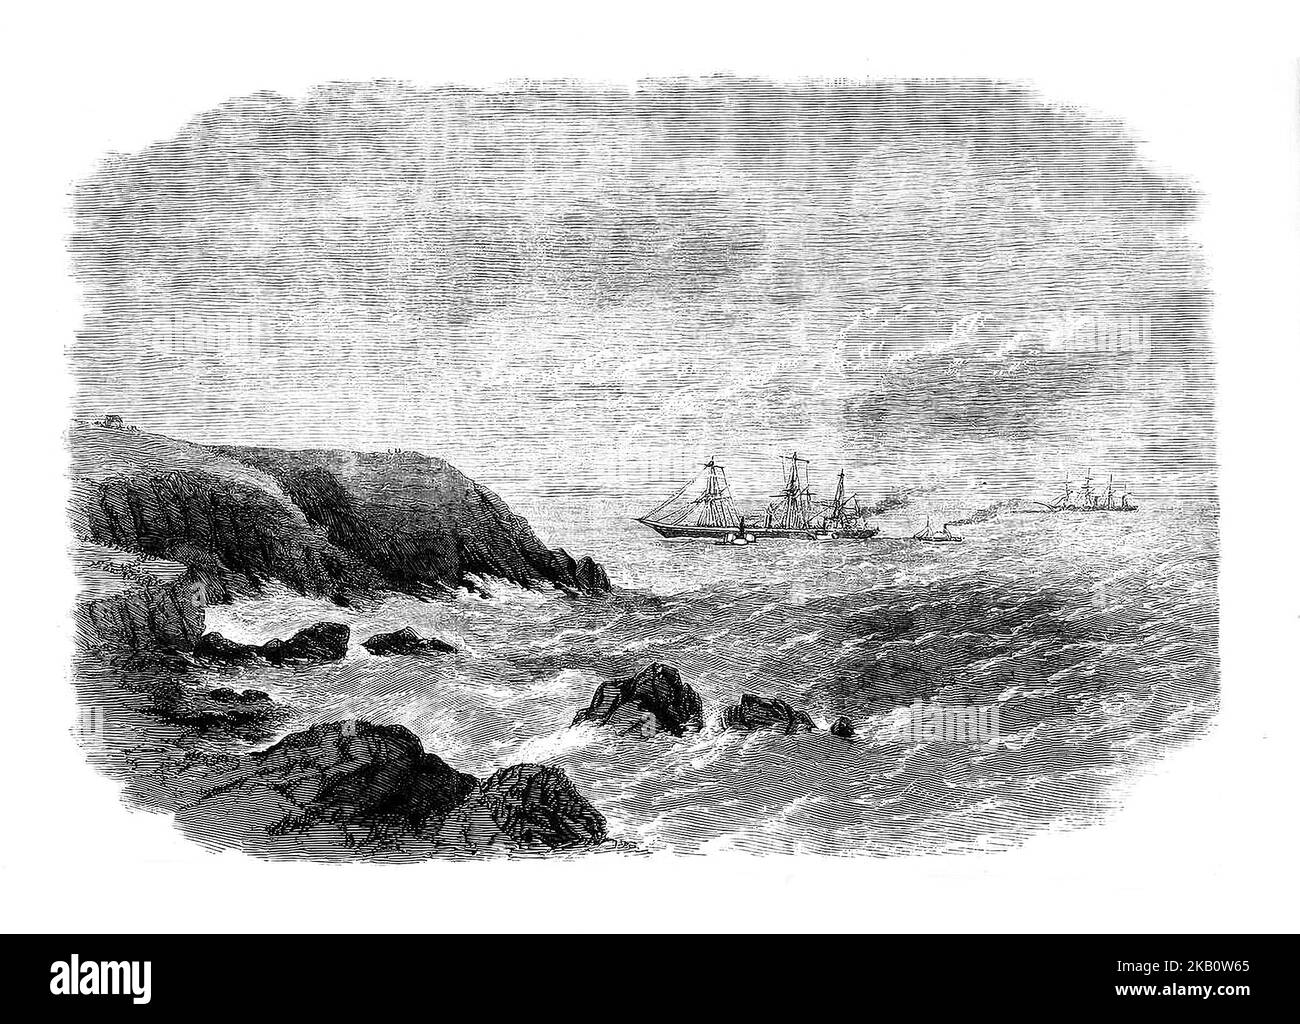 Nel marzo del 1864, la nave a vapore Inman Company, di tre anni, "City of New York", salpò da New York attraversando l'Atlantico. Avvicinandosi al porto di Queenstown (ora chiamato Cobh) sulla costa irlandese della contea di Cork nel bel mezzo di una notte limpida, si è arenata su una barriera corallina chiamata Daunt's Rock. Tenuto fermo, e in condizioni di clima mite, i passeggeri e l'equipaggio hanno avuto poche difficoltà ad abbandonare la nave e non sono state segnalate vittime. Foto Stock